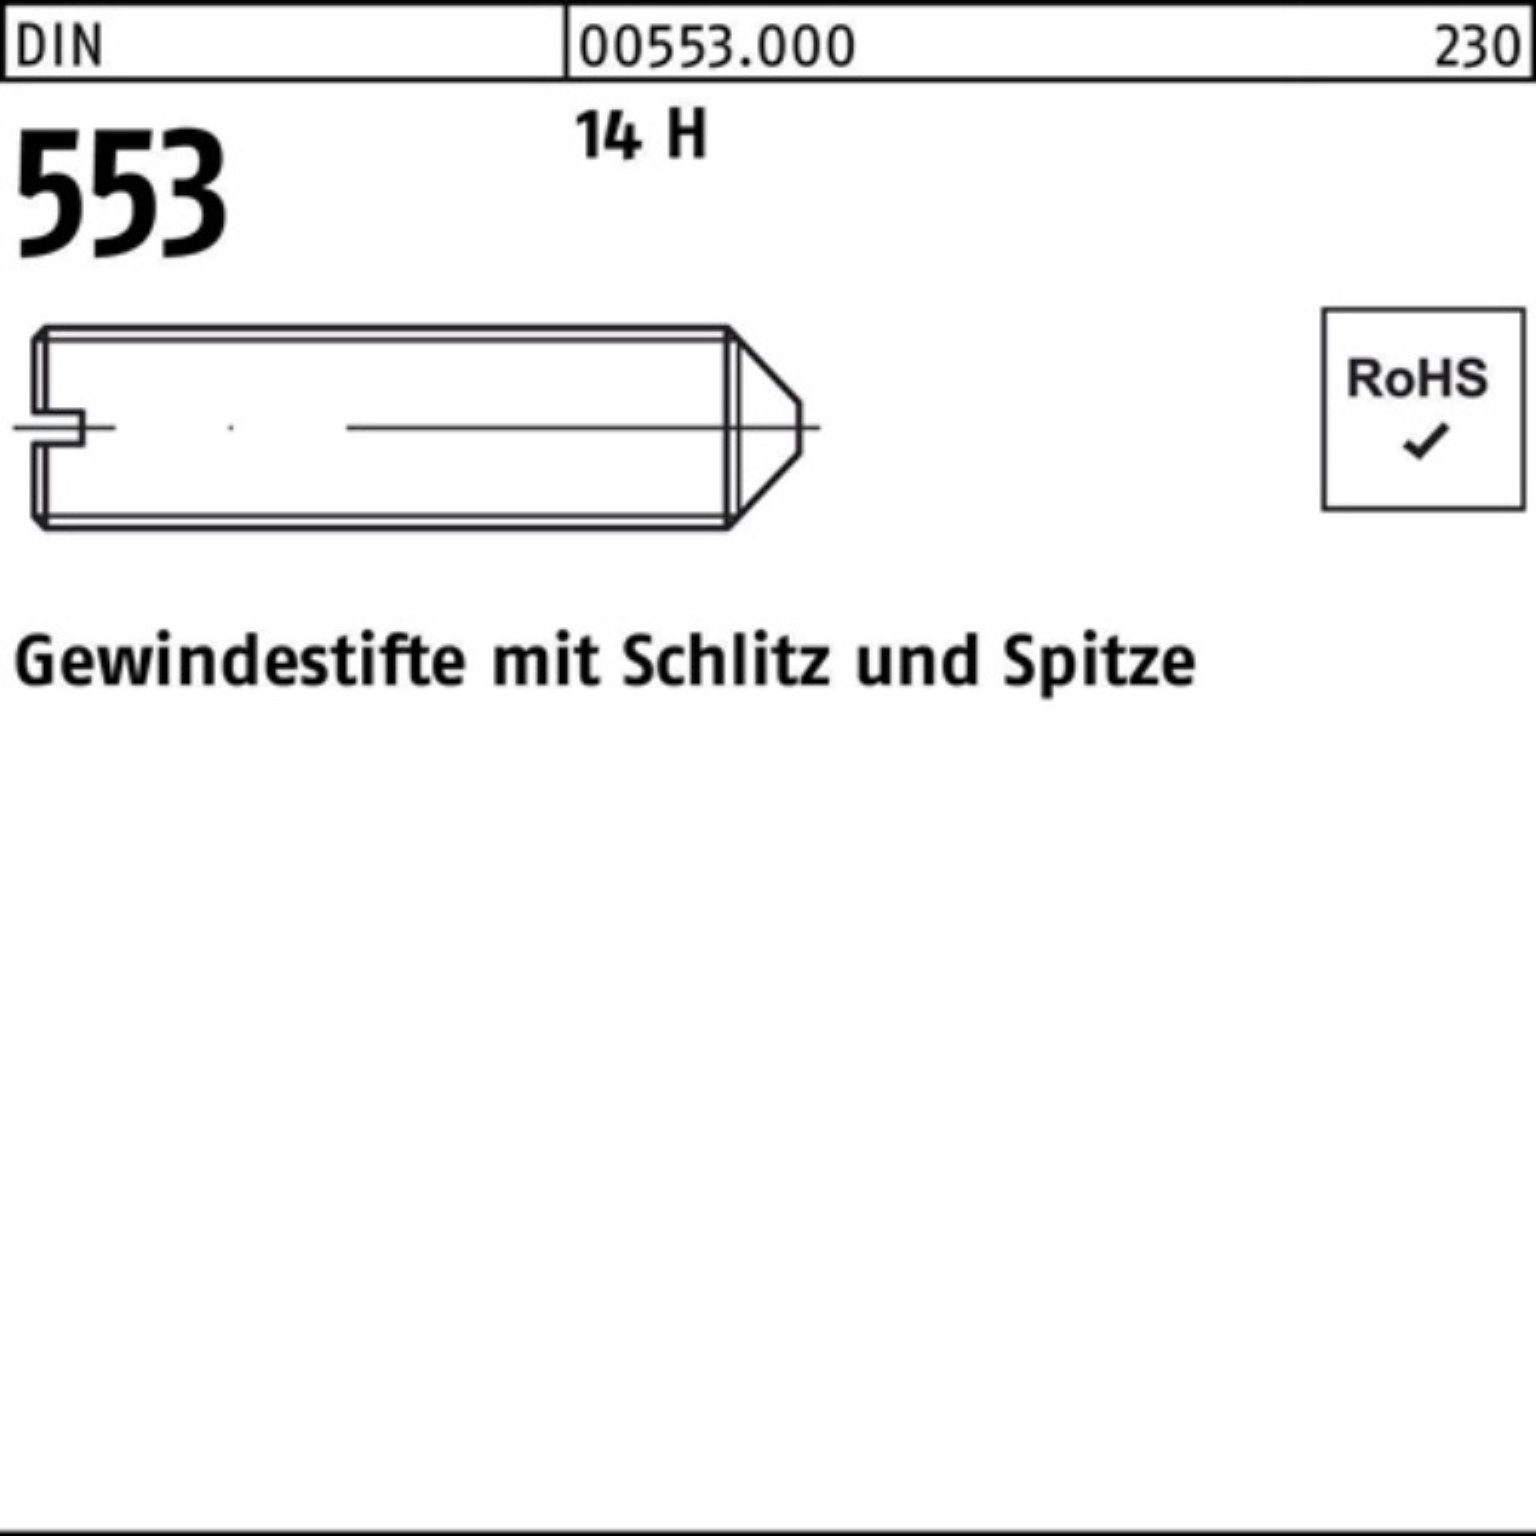 Reyher Gewindebolzen Schlitz/Spitze 553 25 1000 Gewindestift DIN H M6x Stüc Pack 14 1000er